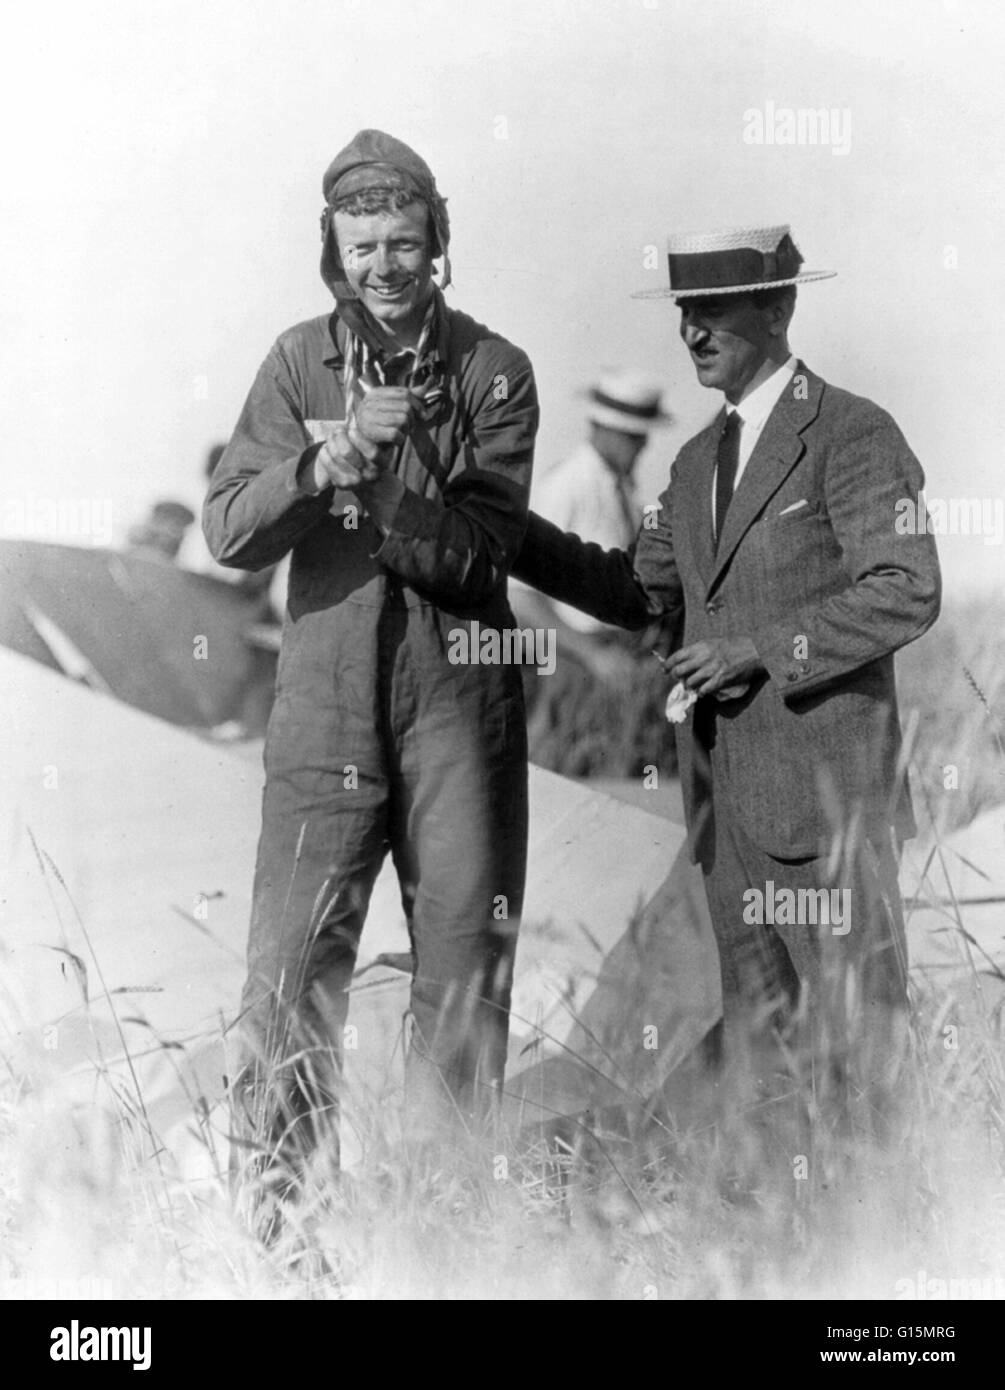 Lindbergh mit Schulter ausgerenkt, nach seinem zweiten Fallschirm springen. Charles Augustus Lindbergh (4. Februar 1902 - 26. August 1974) war ein amerikanischer Flieger. Lindbergh erlangte Weltruhm als Ergebnis seiner Solo-Nonstop-Flug am 20. / 21. Mai 1927 her gemacht Stockfoto